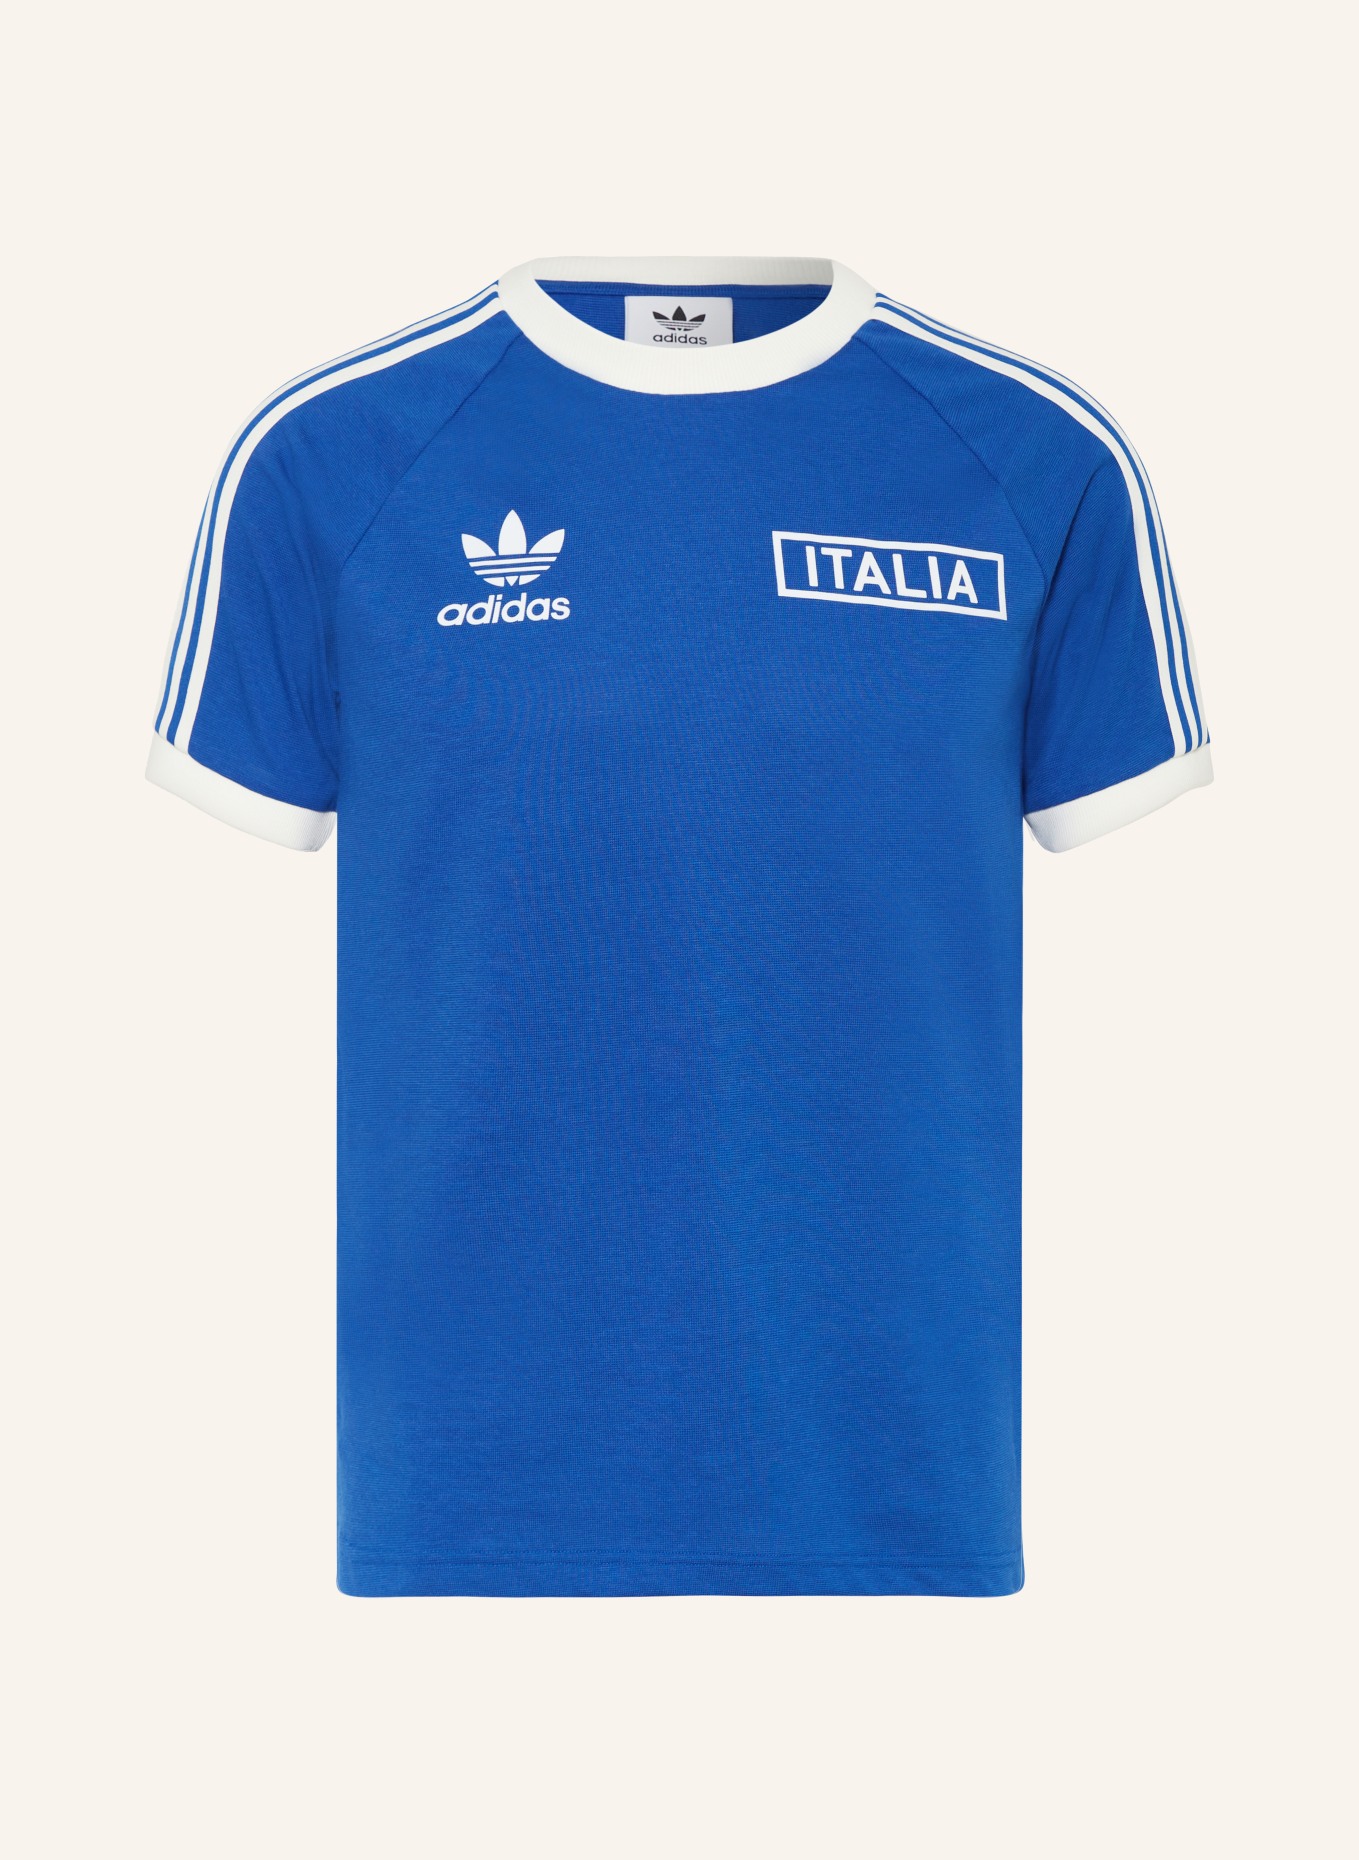 adidas Originals T-Shirt ITALIEN ADICOLOR CLASSICS, Farbe: BLAU (Bild 1)